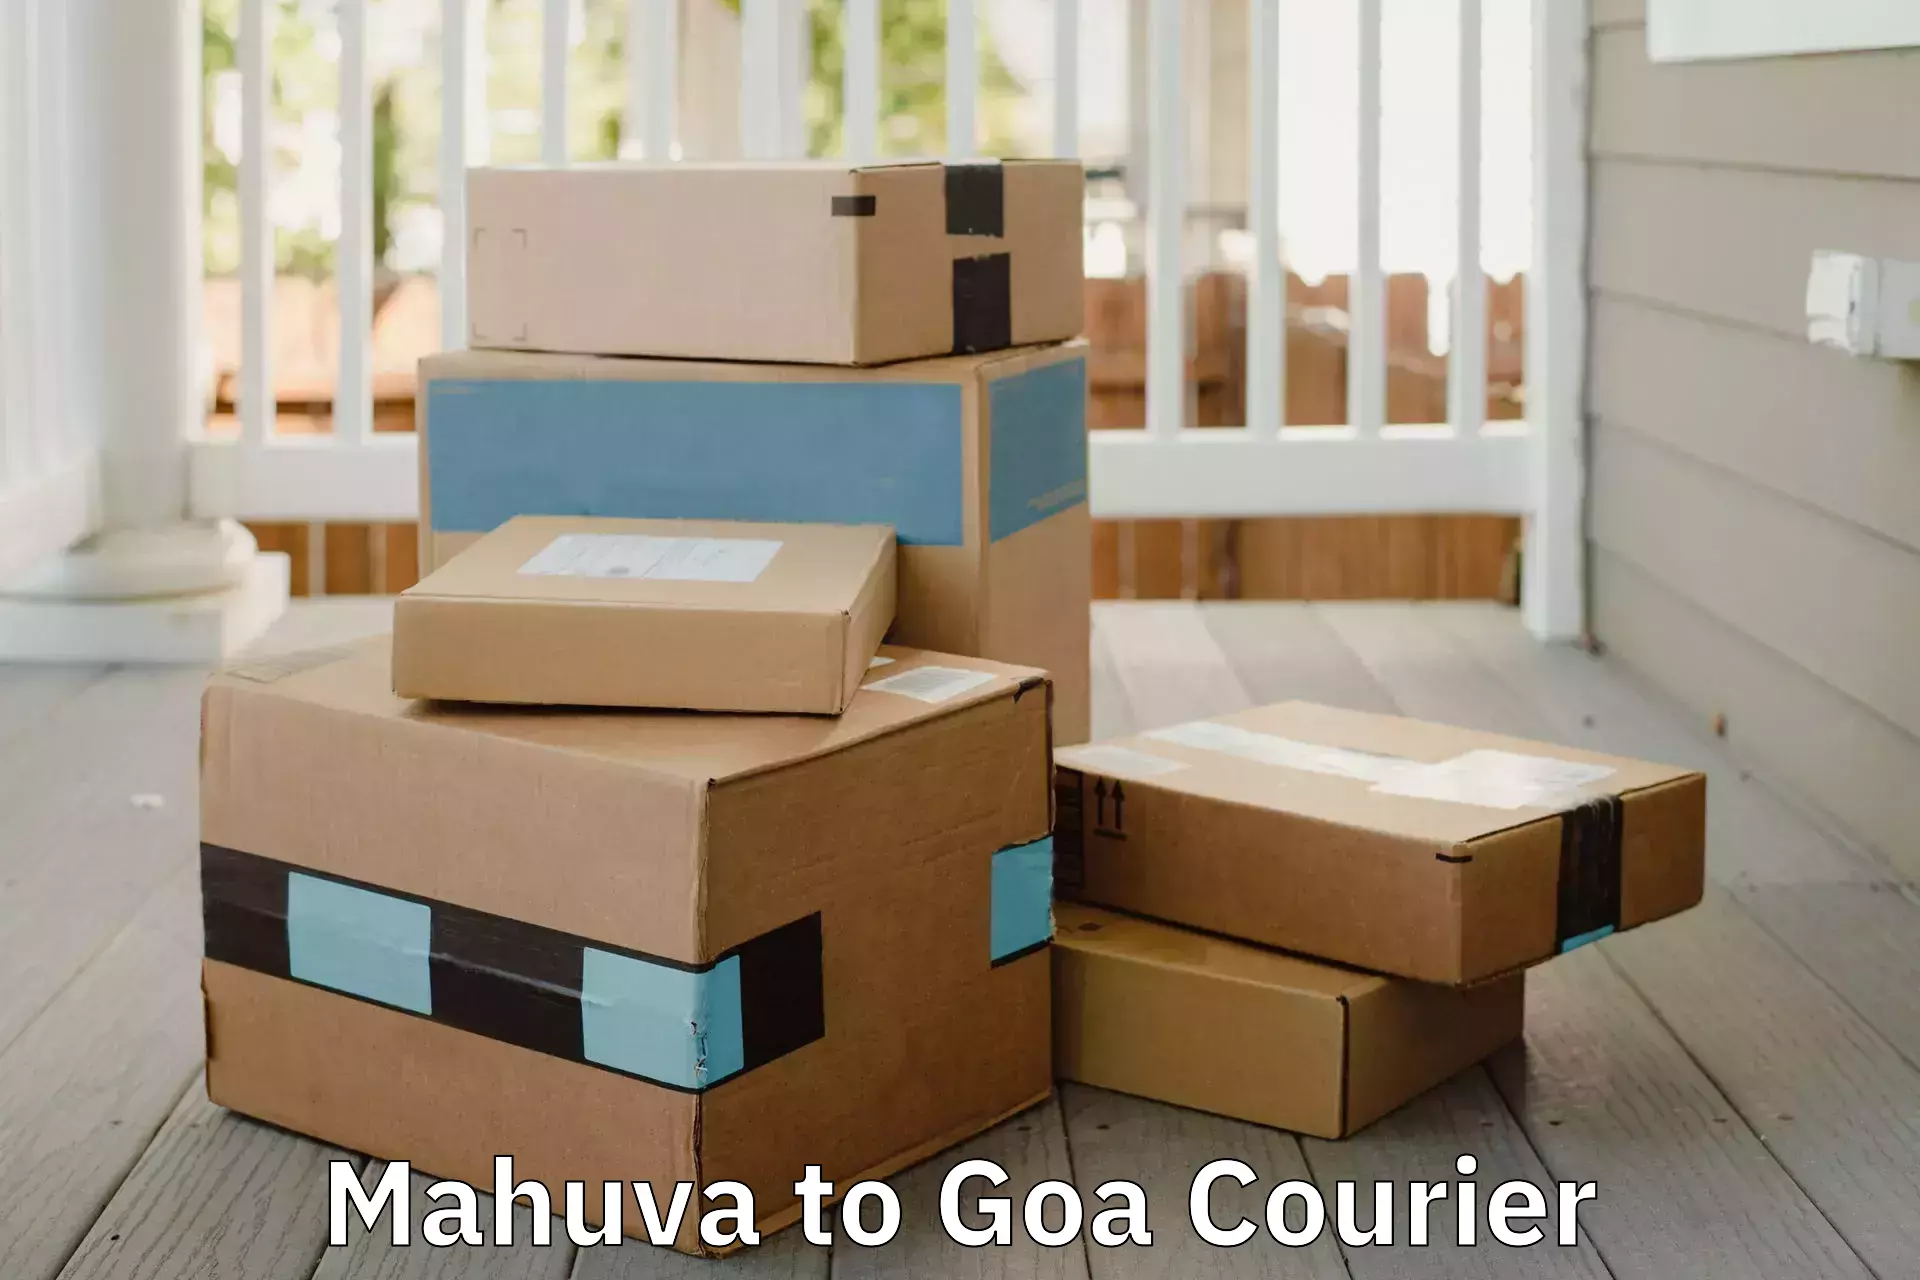 Trusted moving company Mahuva to Goa